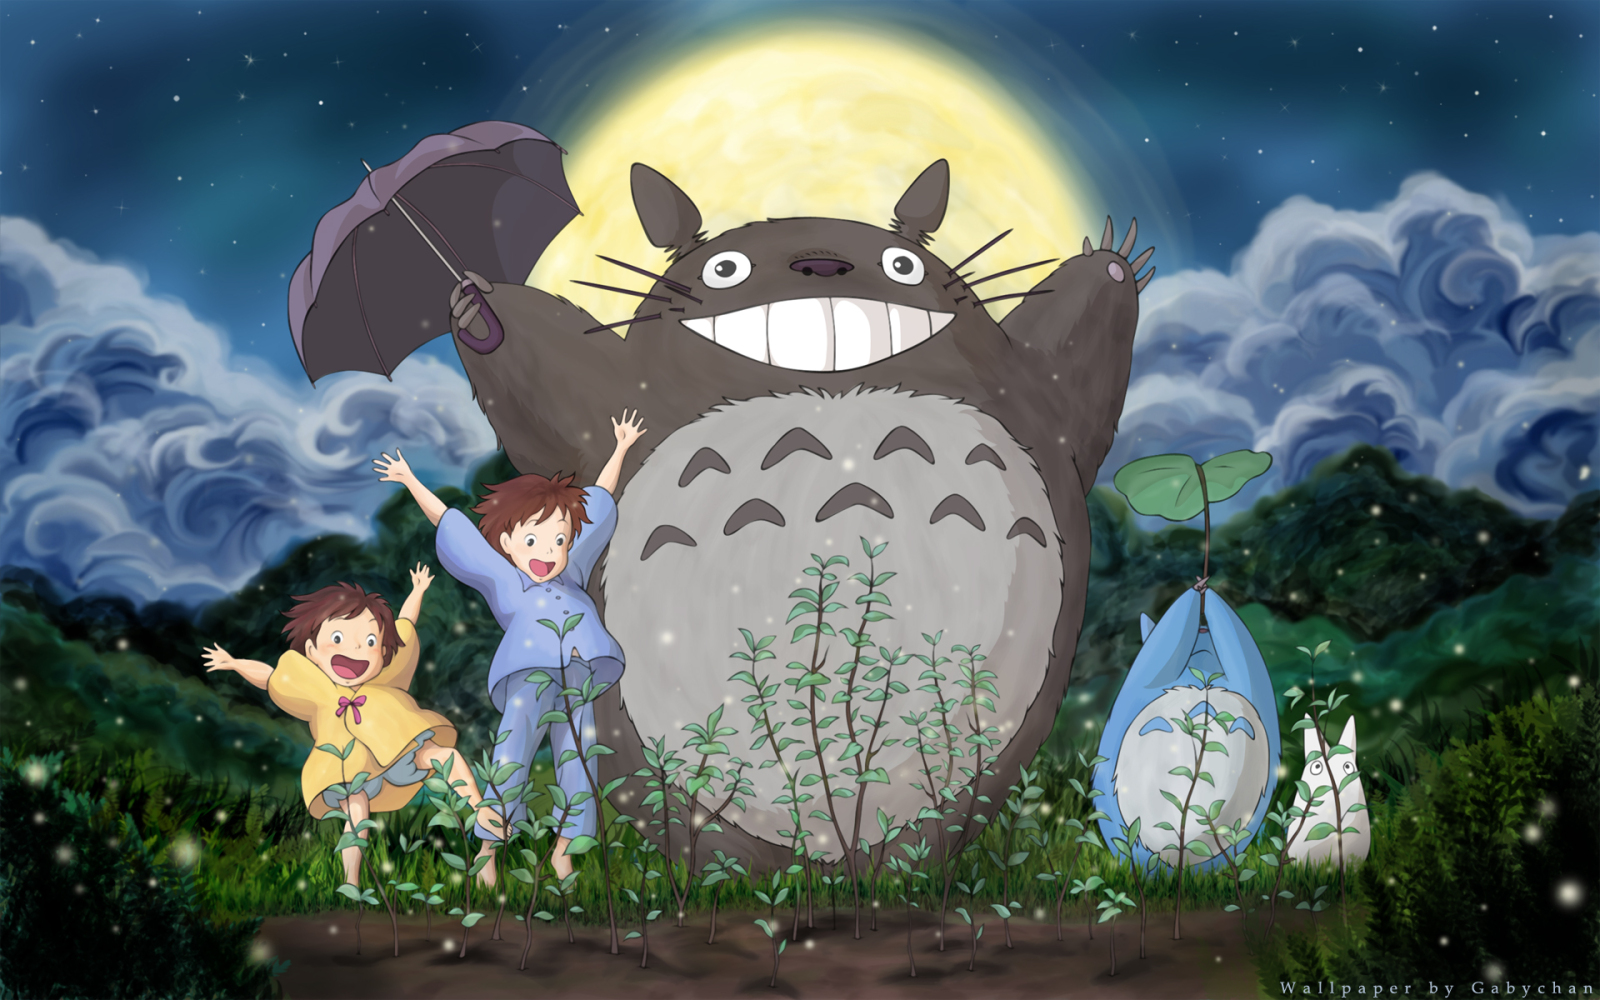 Free Download Studio Ghibli Fr 1600x1000 For Your Desktop Mobile Tablet Explore 77 Studio Ghibli Wallpaper Studio Ghibli Wallpaper Studio Ghibli Wallpapers Studio Ghibli Iphone Wallpaper